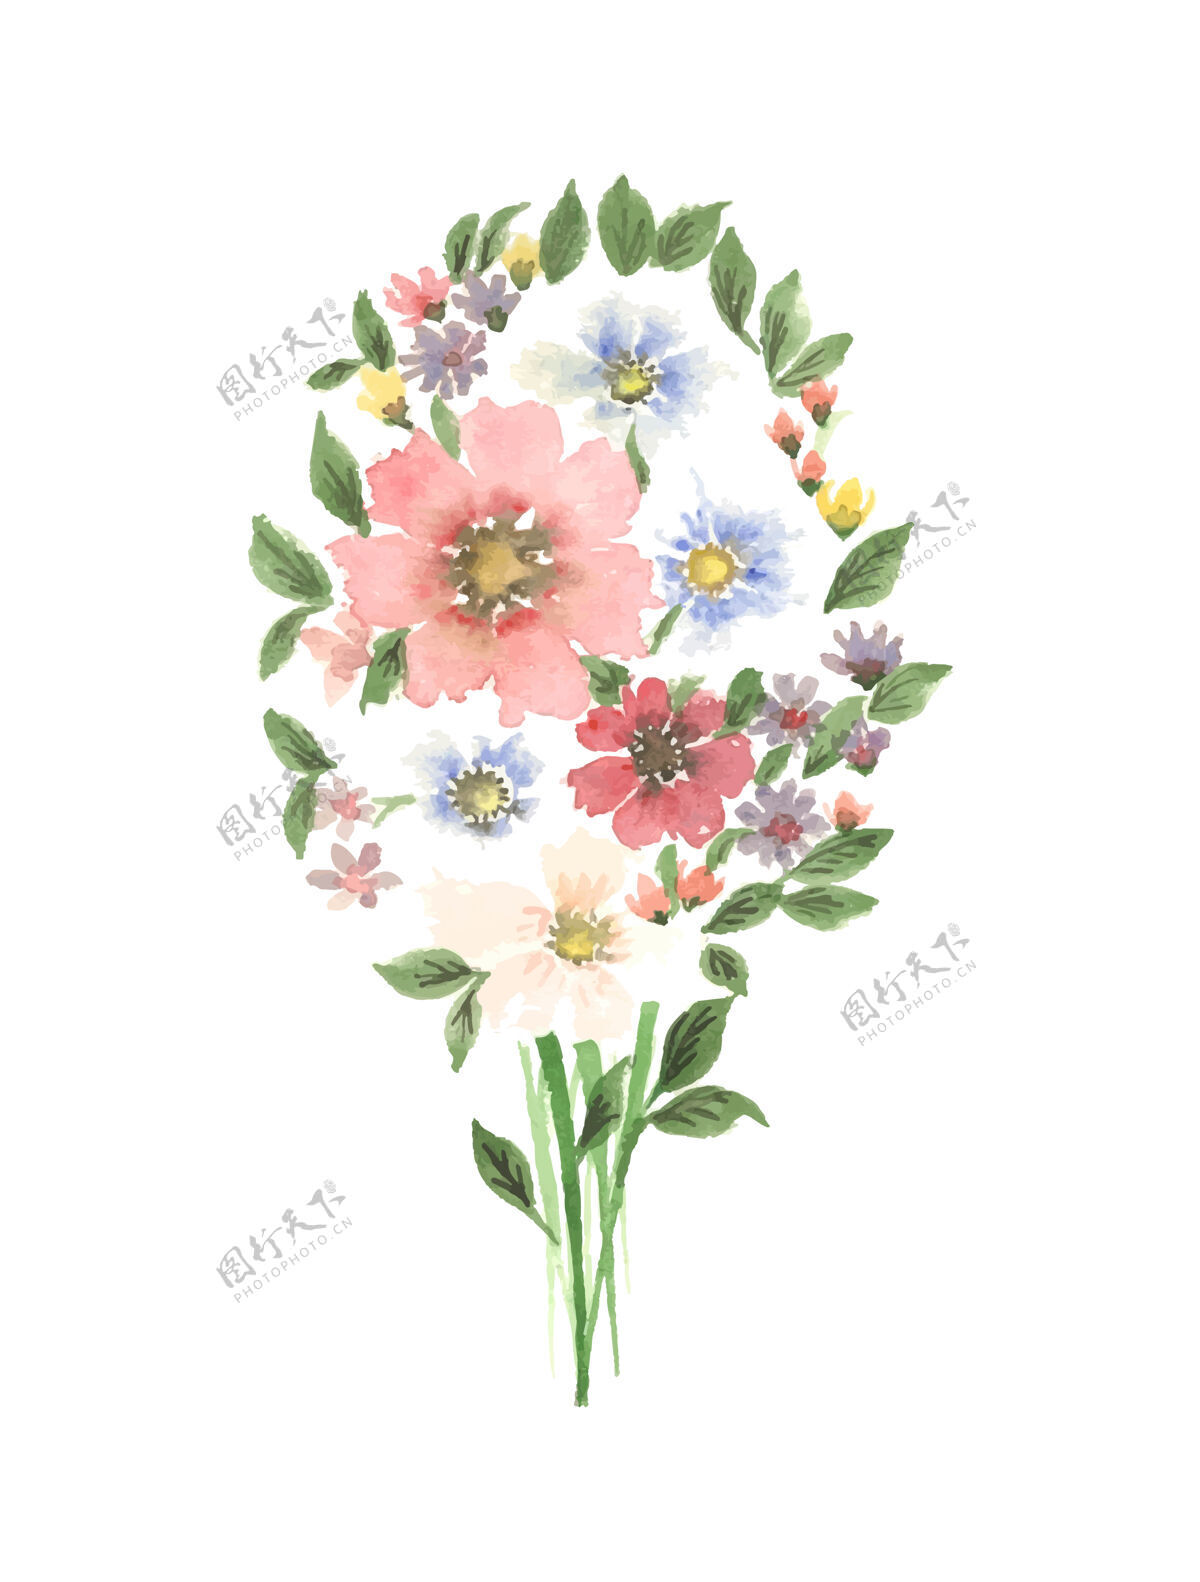 绘制手工水彩花卉艺术手绘手工制作可爱